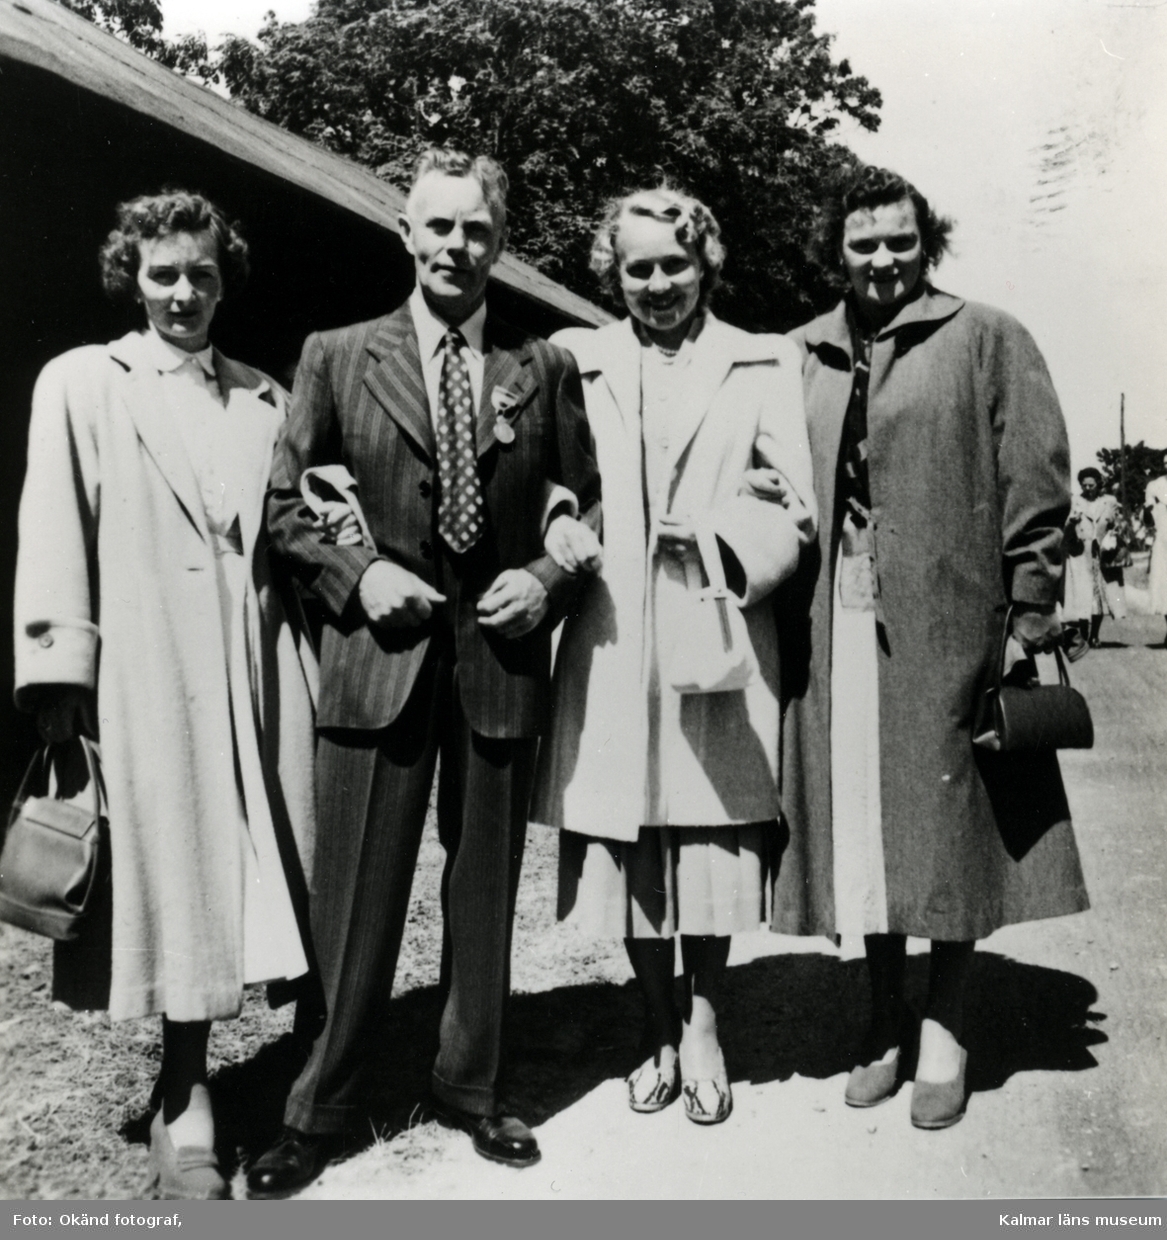 1953, jubileet på Öland, på Riddargården. Från vänster: Margit Hedin, Arvid "på vinden" Johansson, Elsa Tell och Dagmar Nilsson.